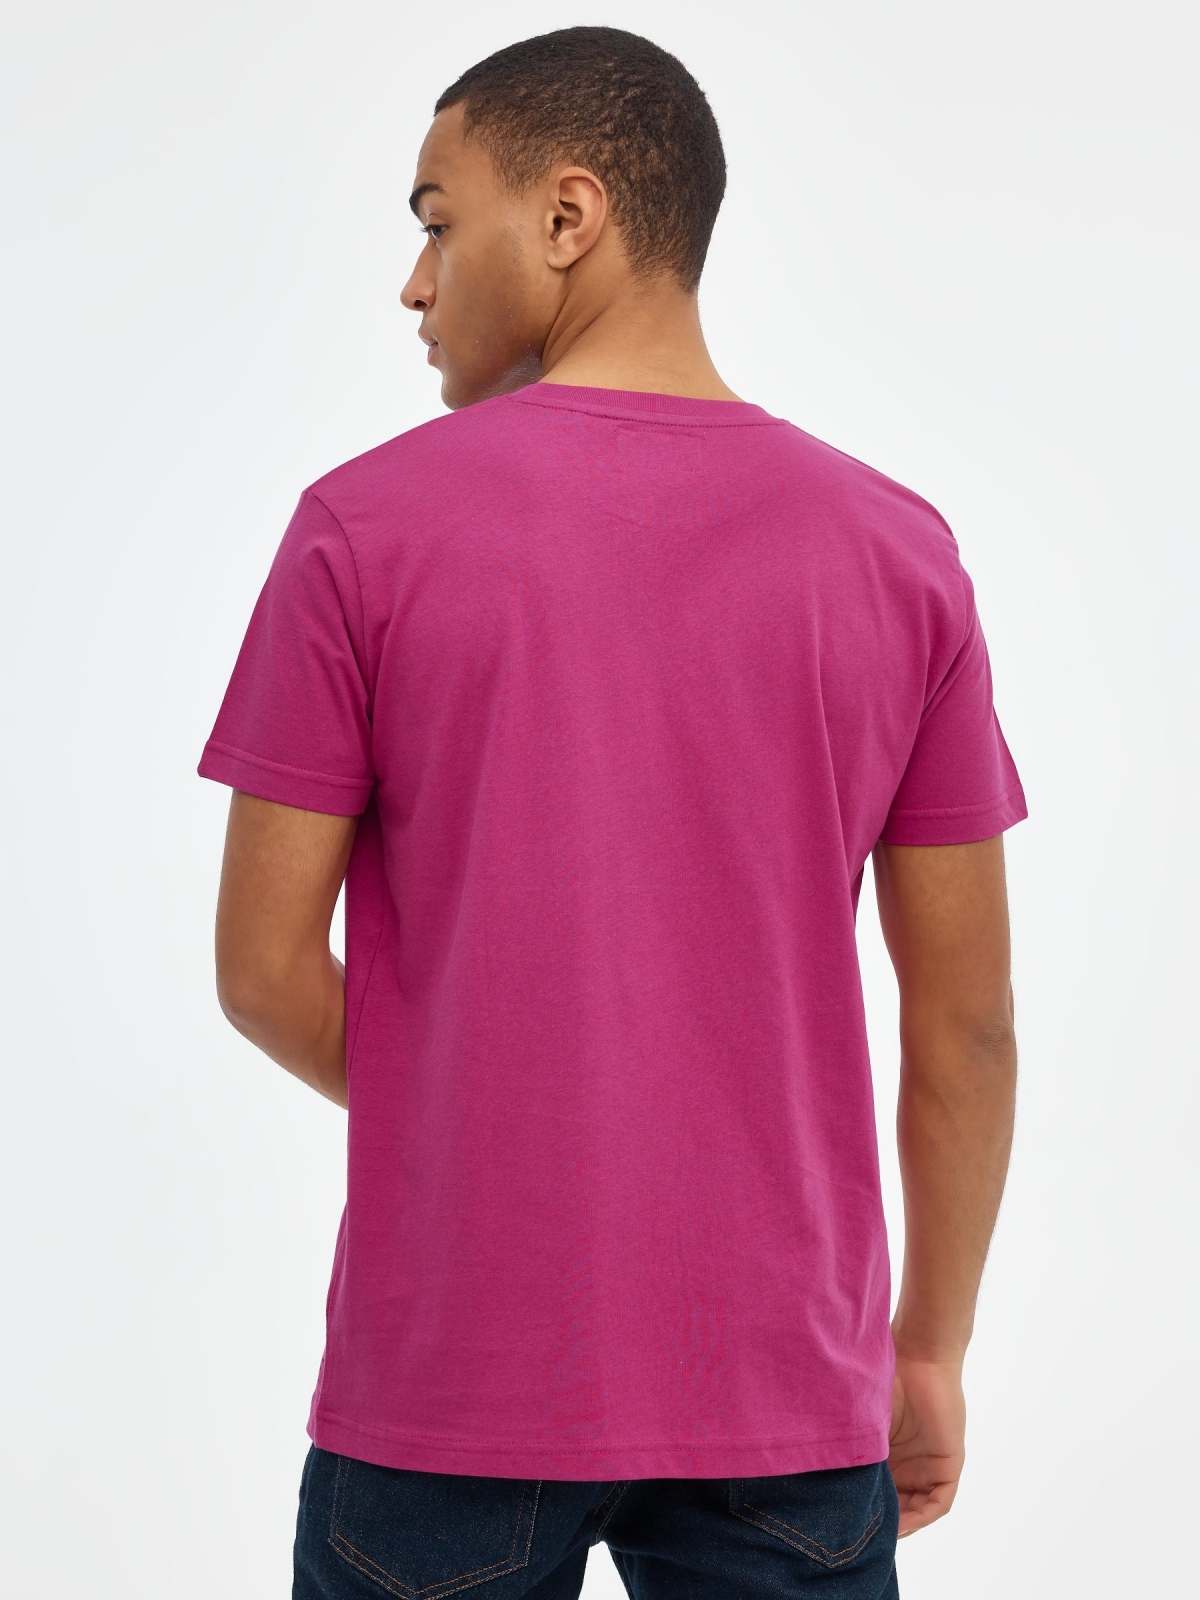 T-shirt básica manga curta fúcsia vista meia traseira